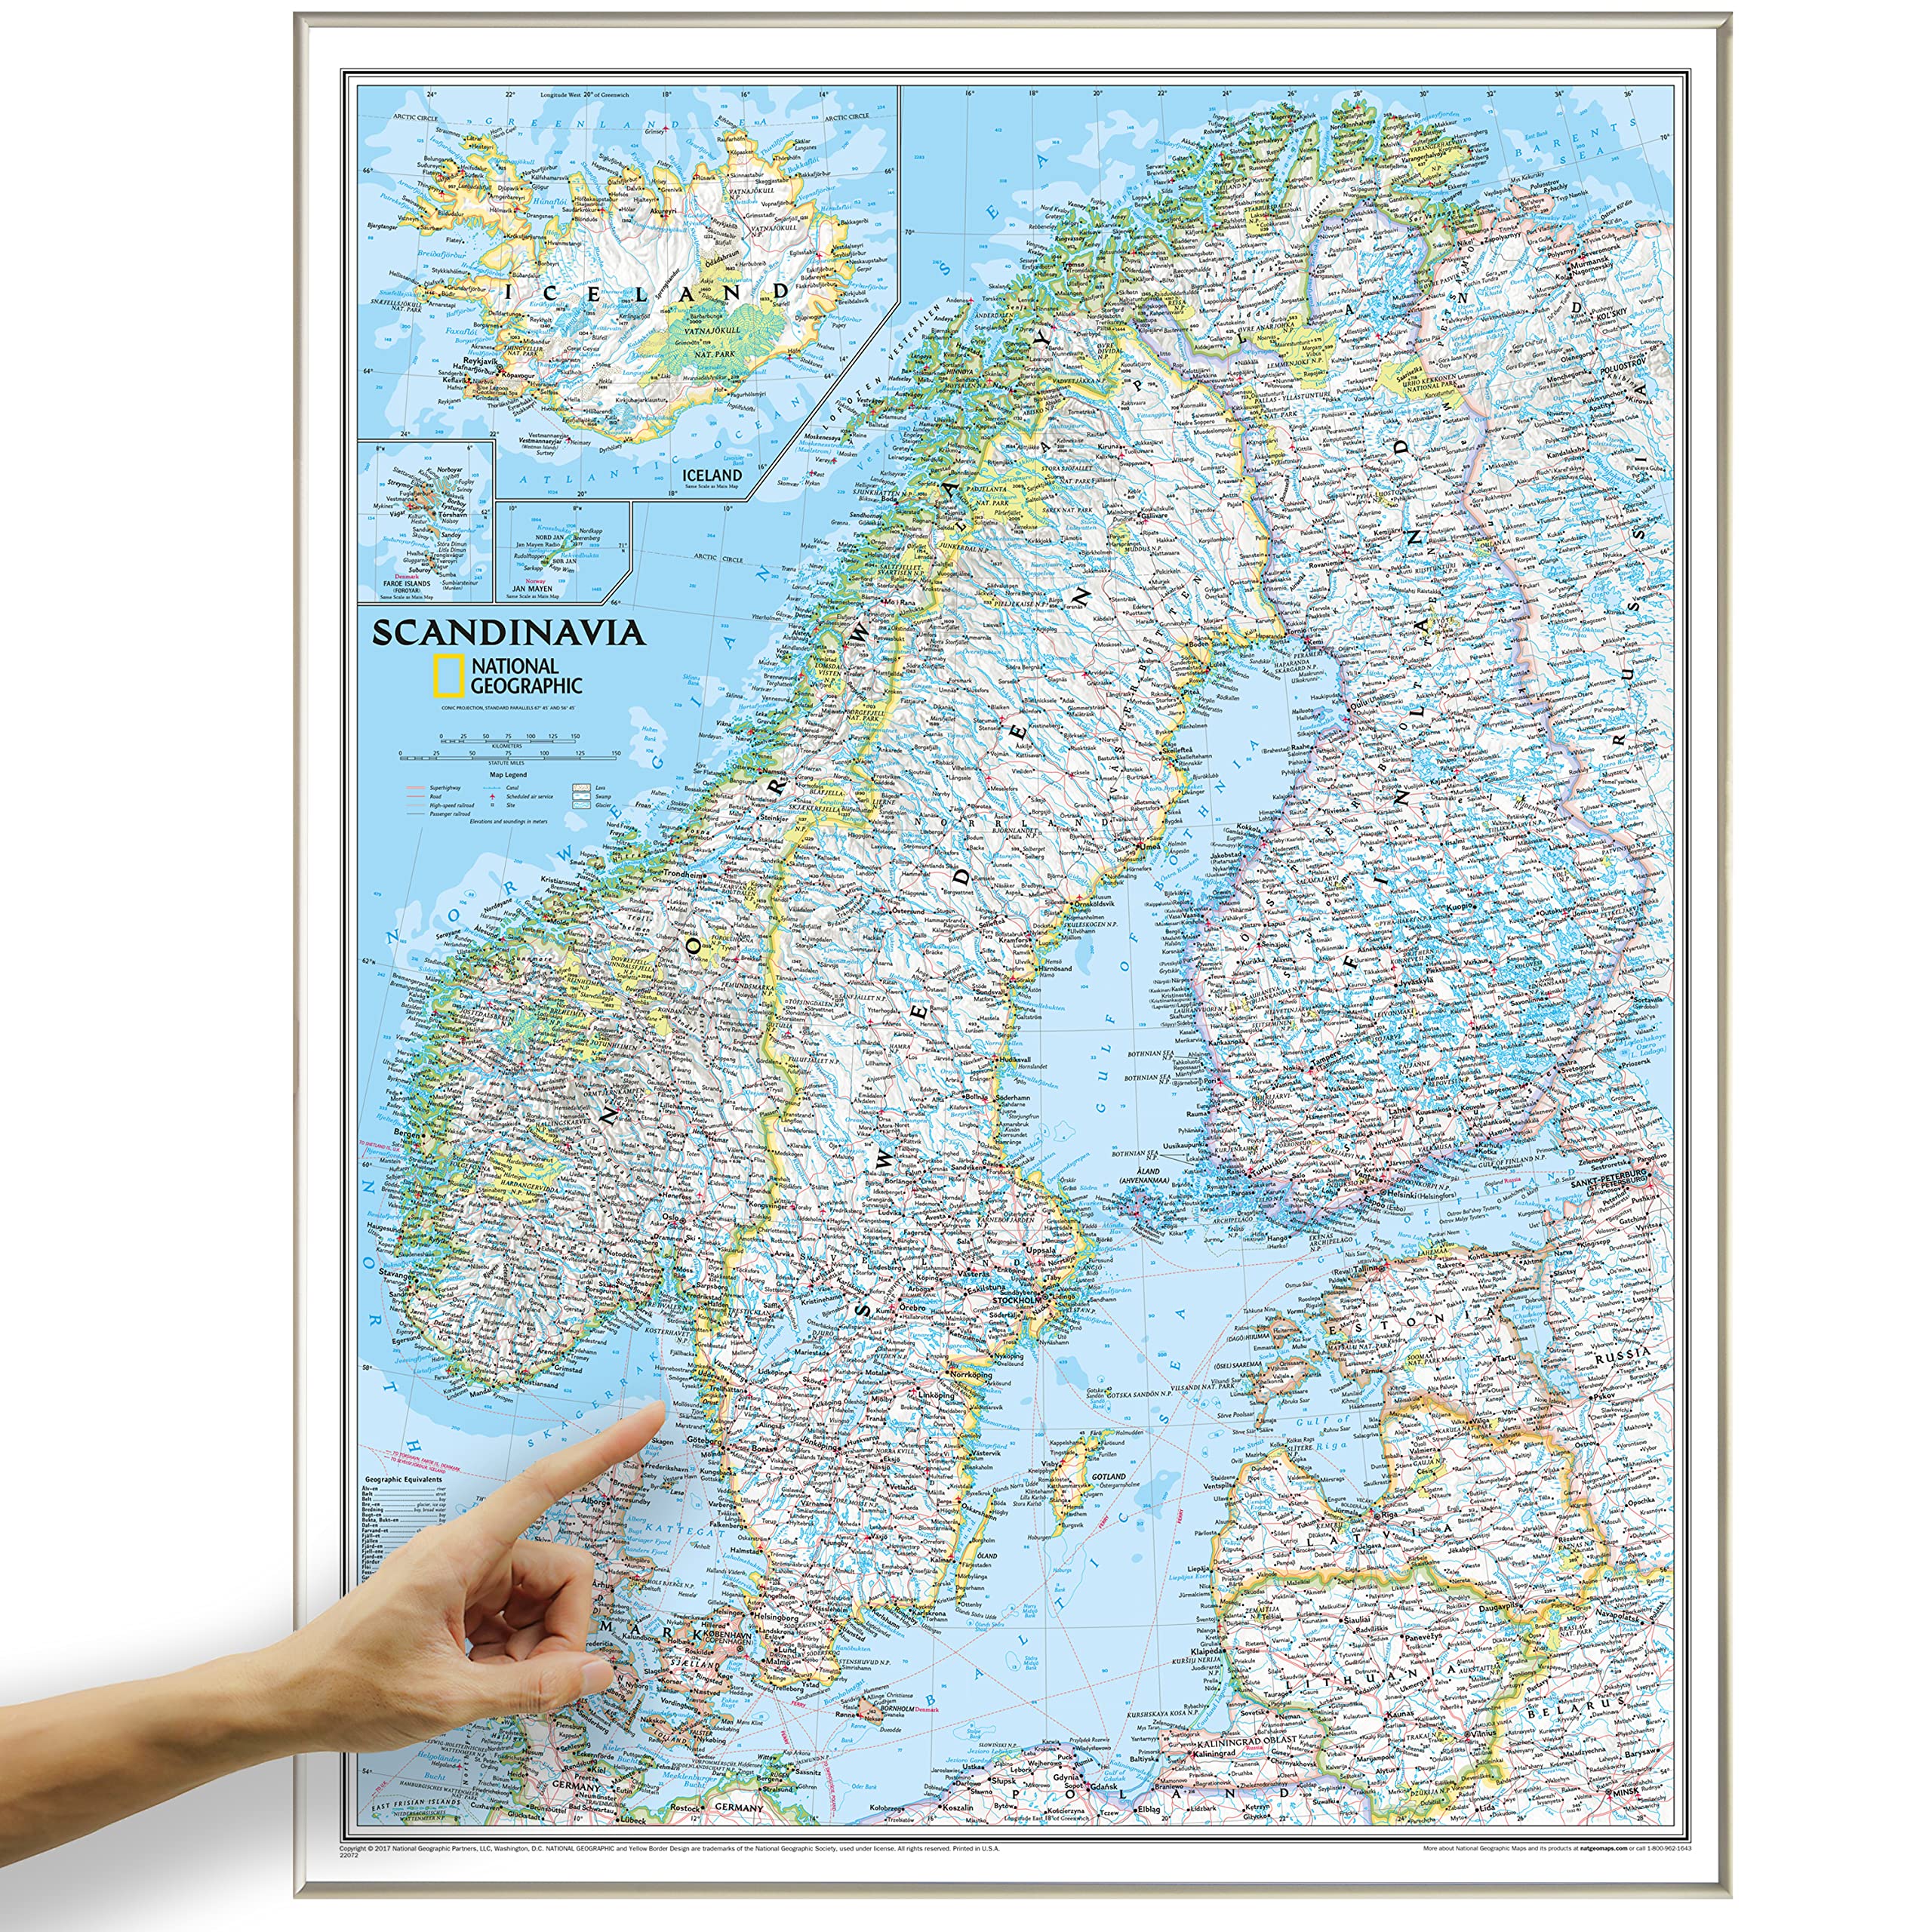 ORBIT Globes & Maps - Skandinavien Landkarte, Kartenbild von National Geographic - Pinnwand Landkarte classic mit Alurahmen, Aktuell 2019, 58 x 76 cm, englisch